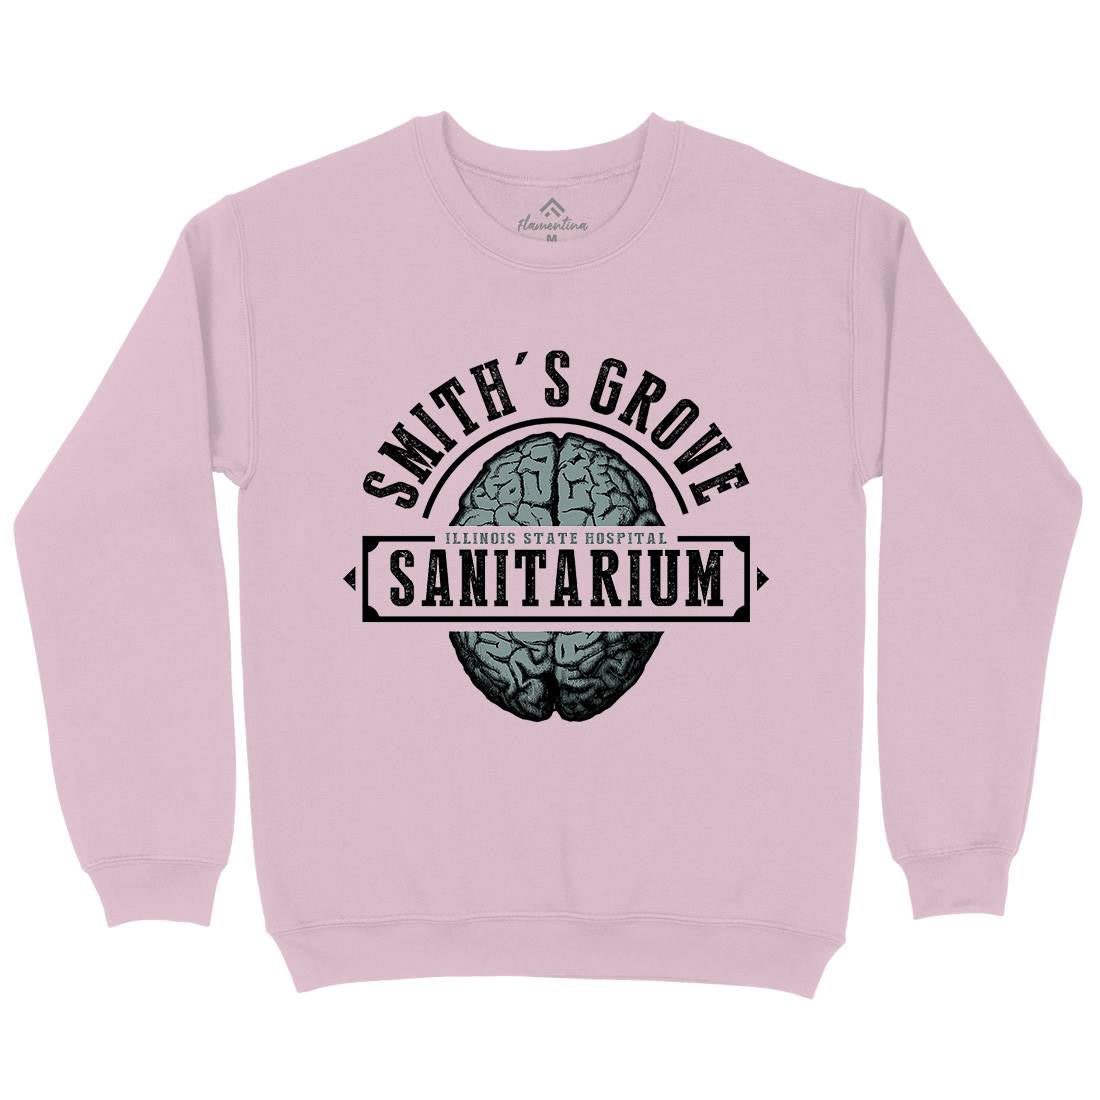 Smiths Grove Kids Crew Neck Sweatshirt Horror D331